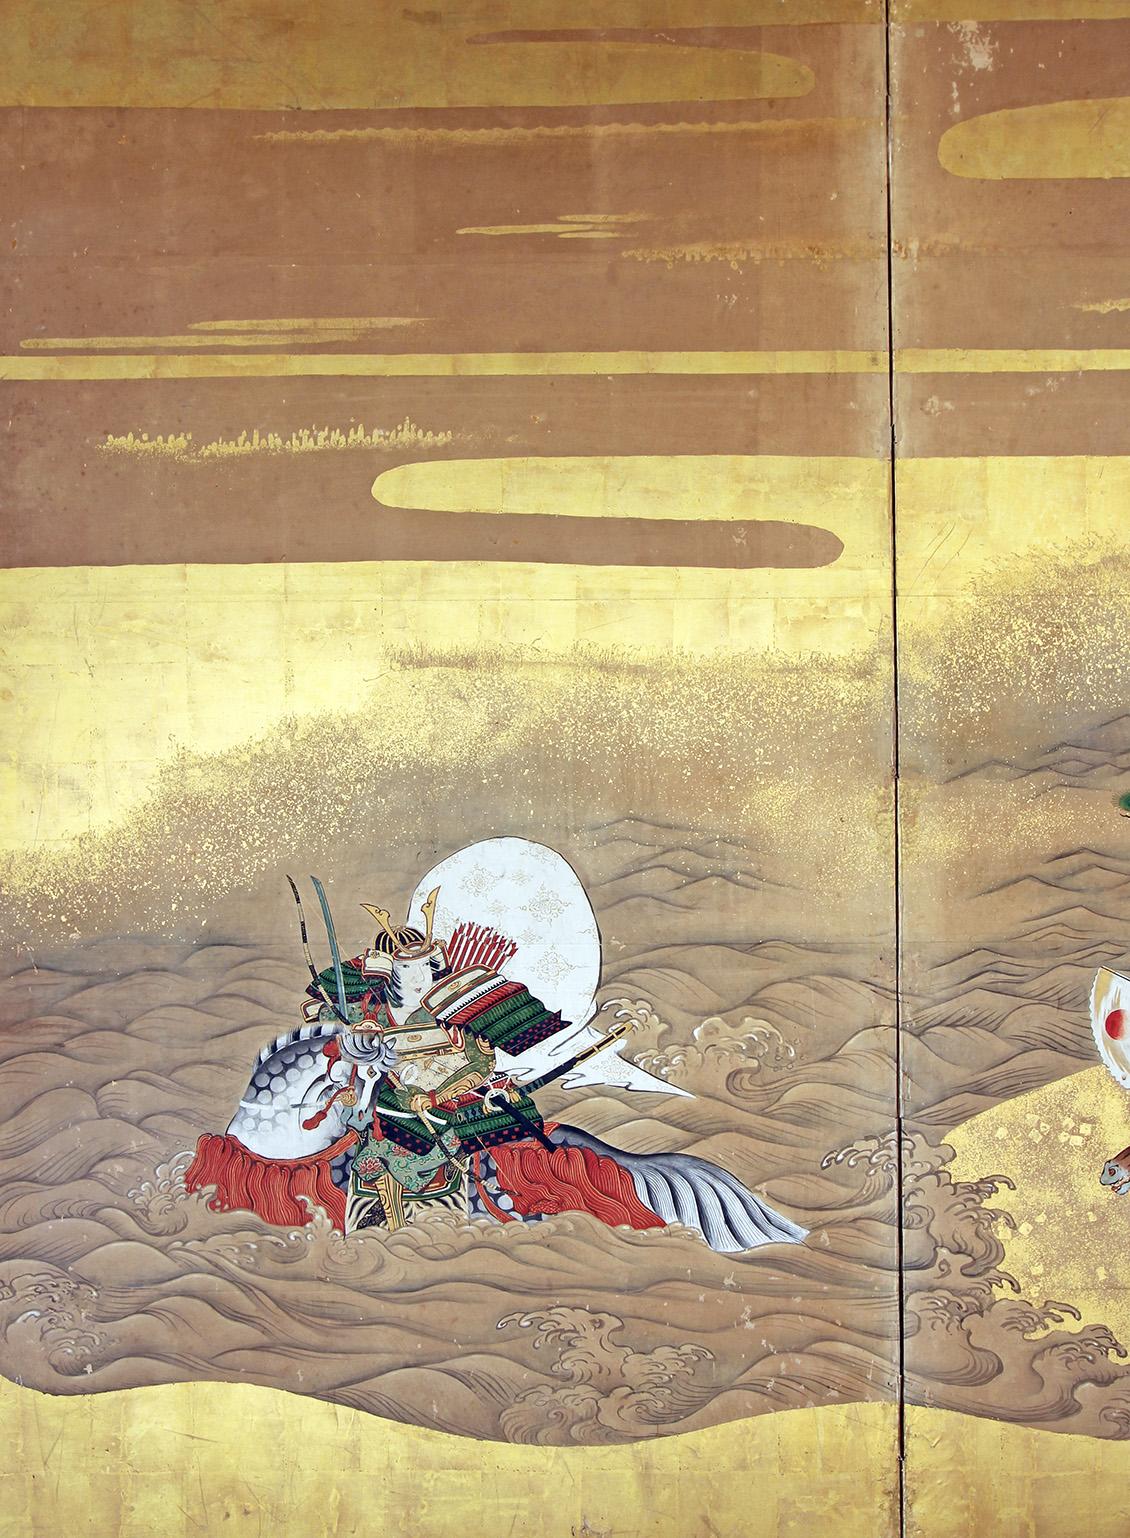 Paravento a due pannelli di scuola Tosa dipinto a pigmenti minerali su foglia d'oro e carta di riso.
Raffigura nella Guerra di Genpei la Battaglia di Ichi-no-Tani tra i Clan Giapponesi Minamoto e Taira.
